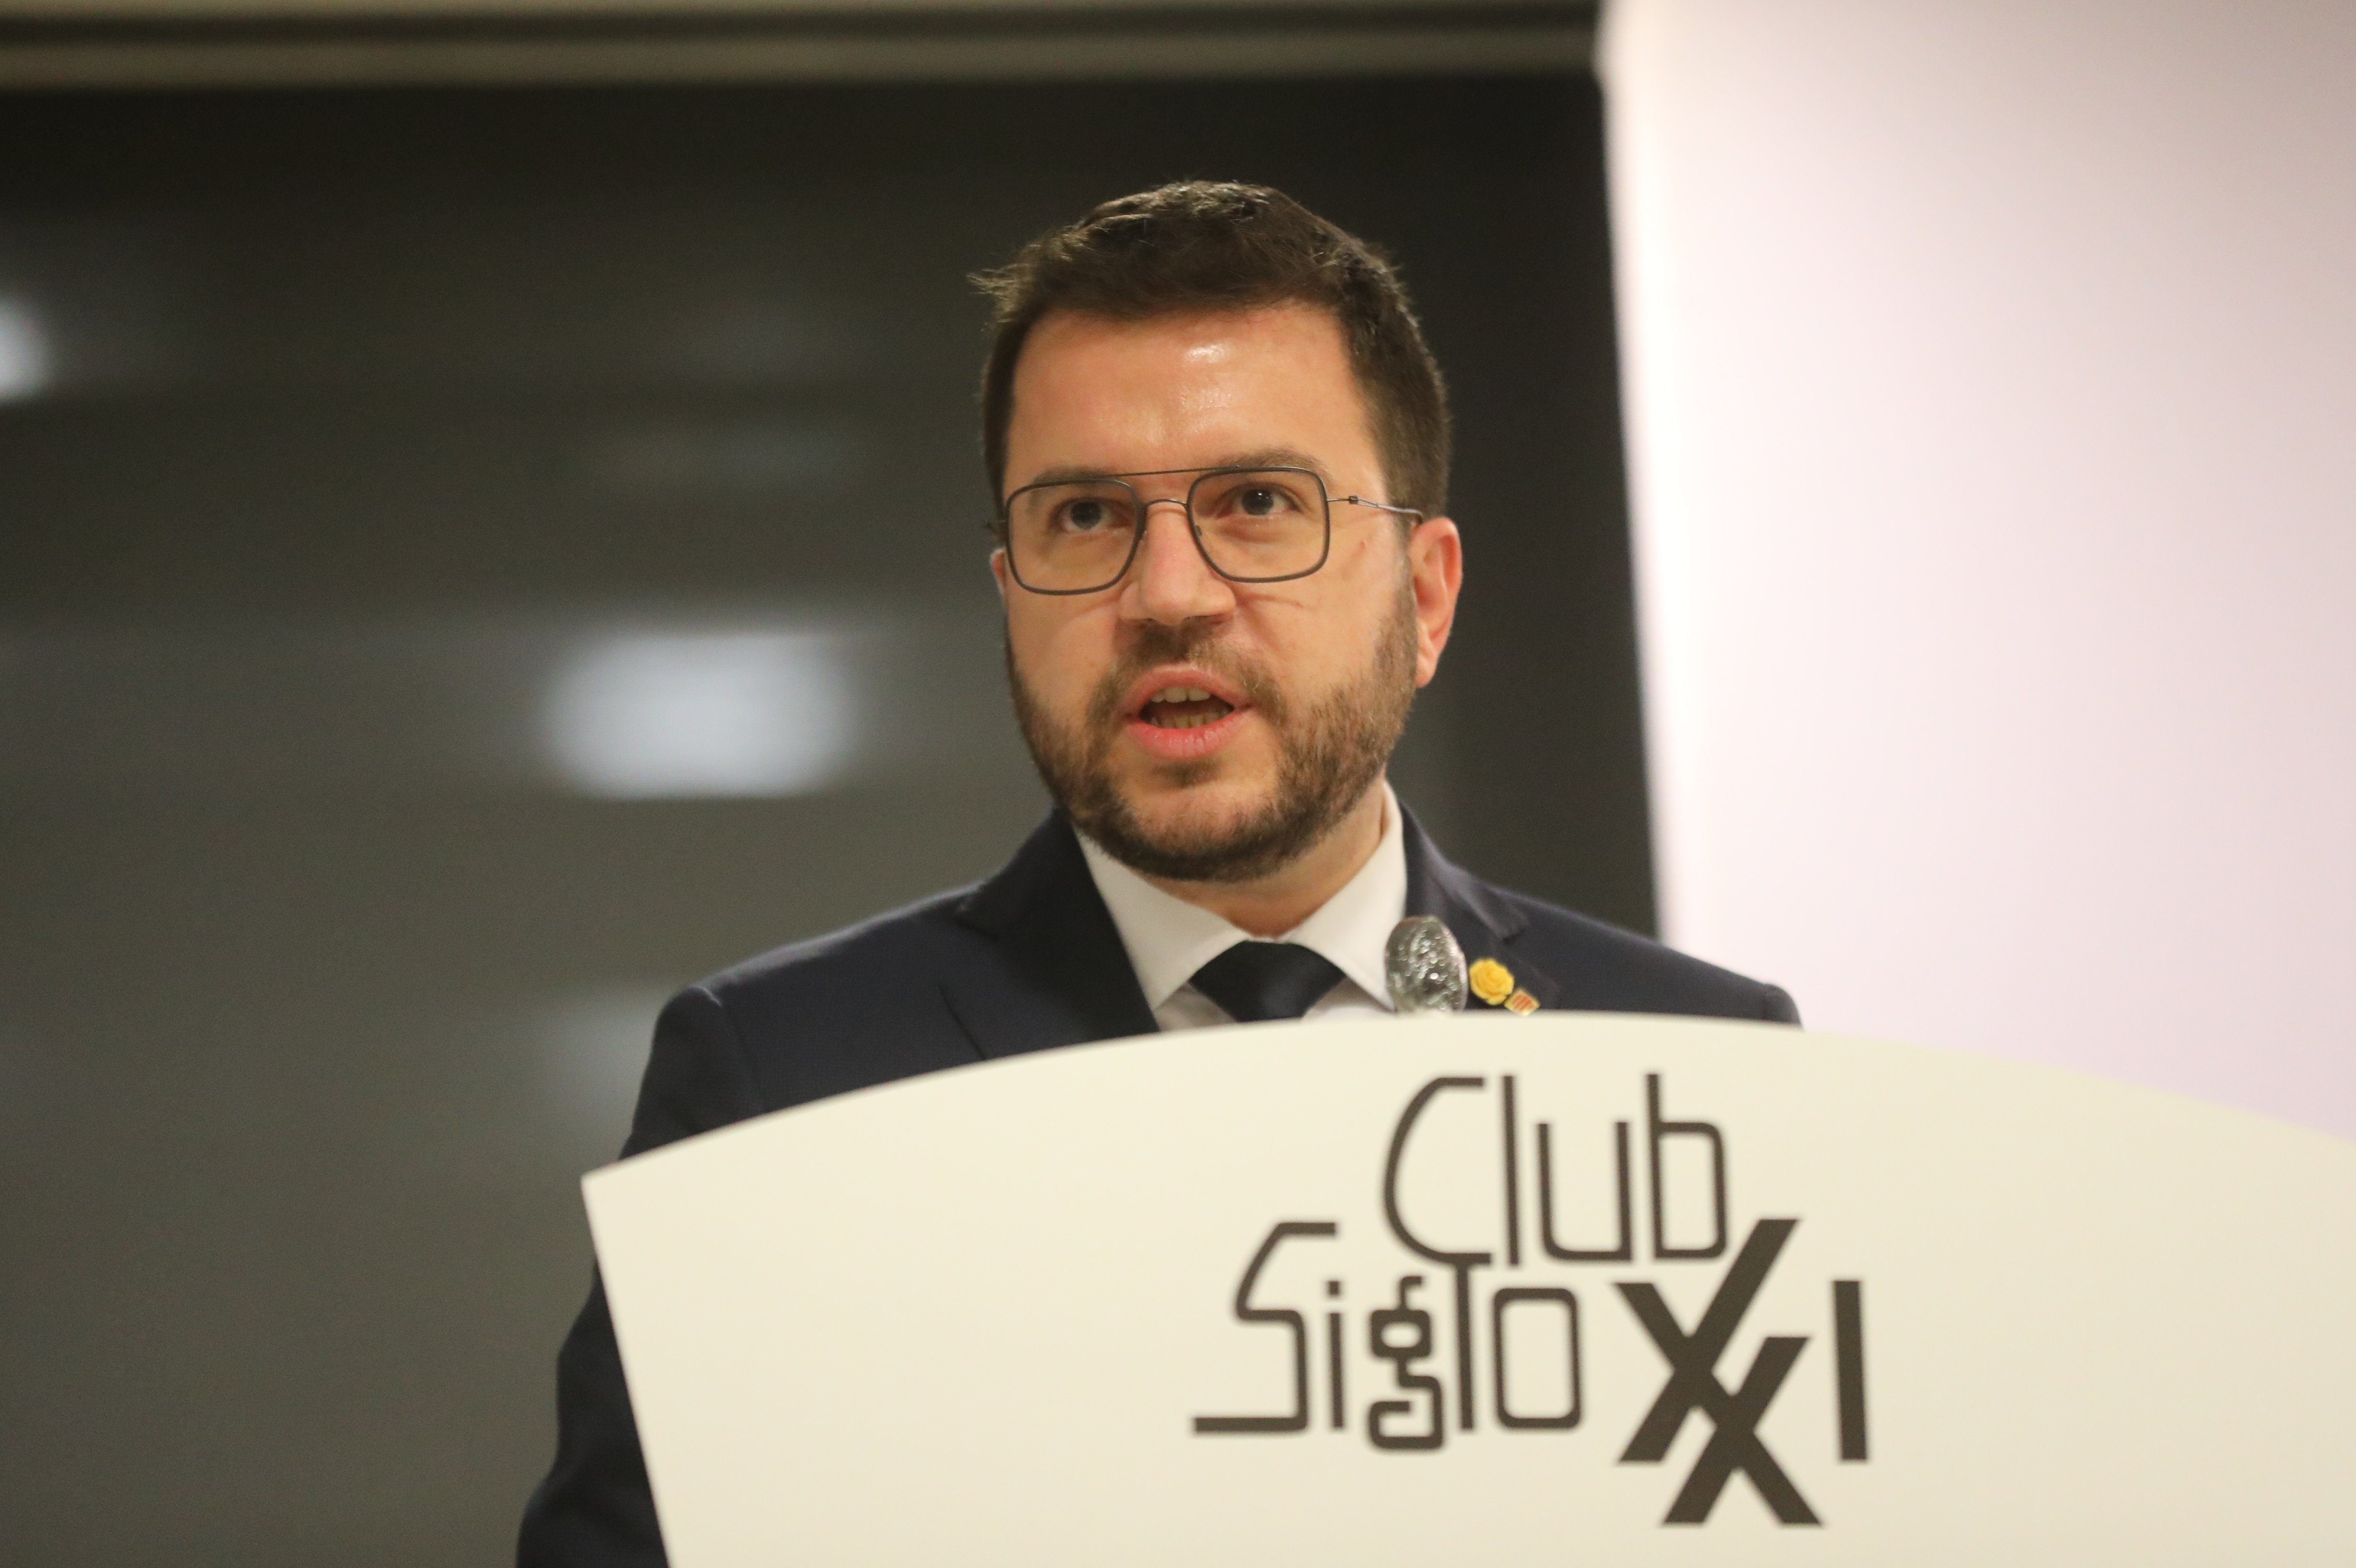 Aragonès reclama a Sánchez "derogar" la reforma laboral del PP para validar el decreto